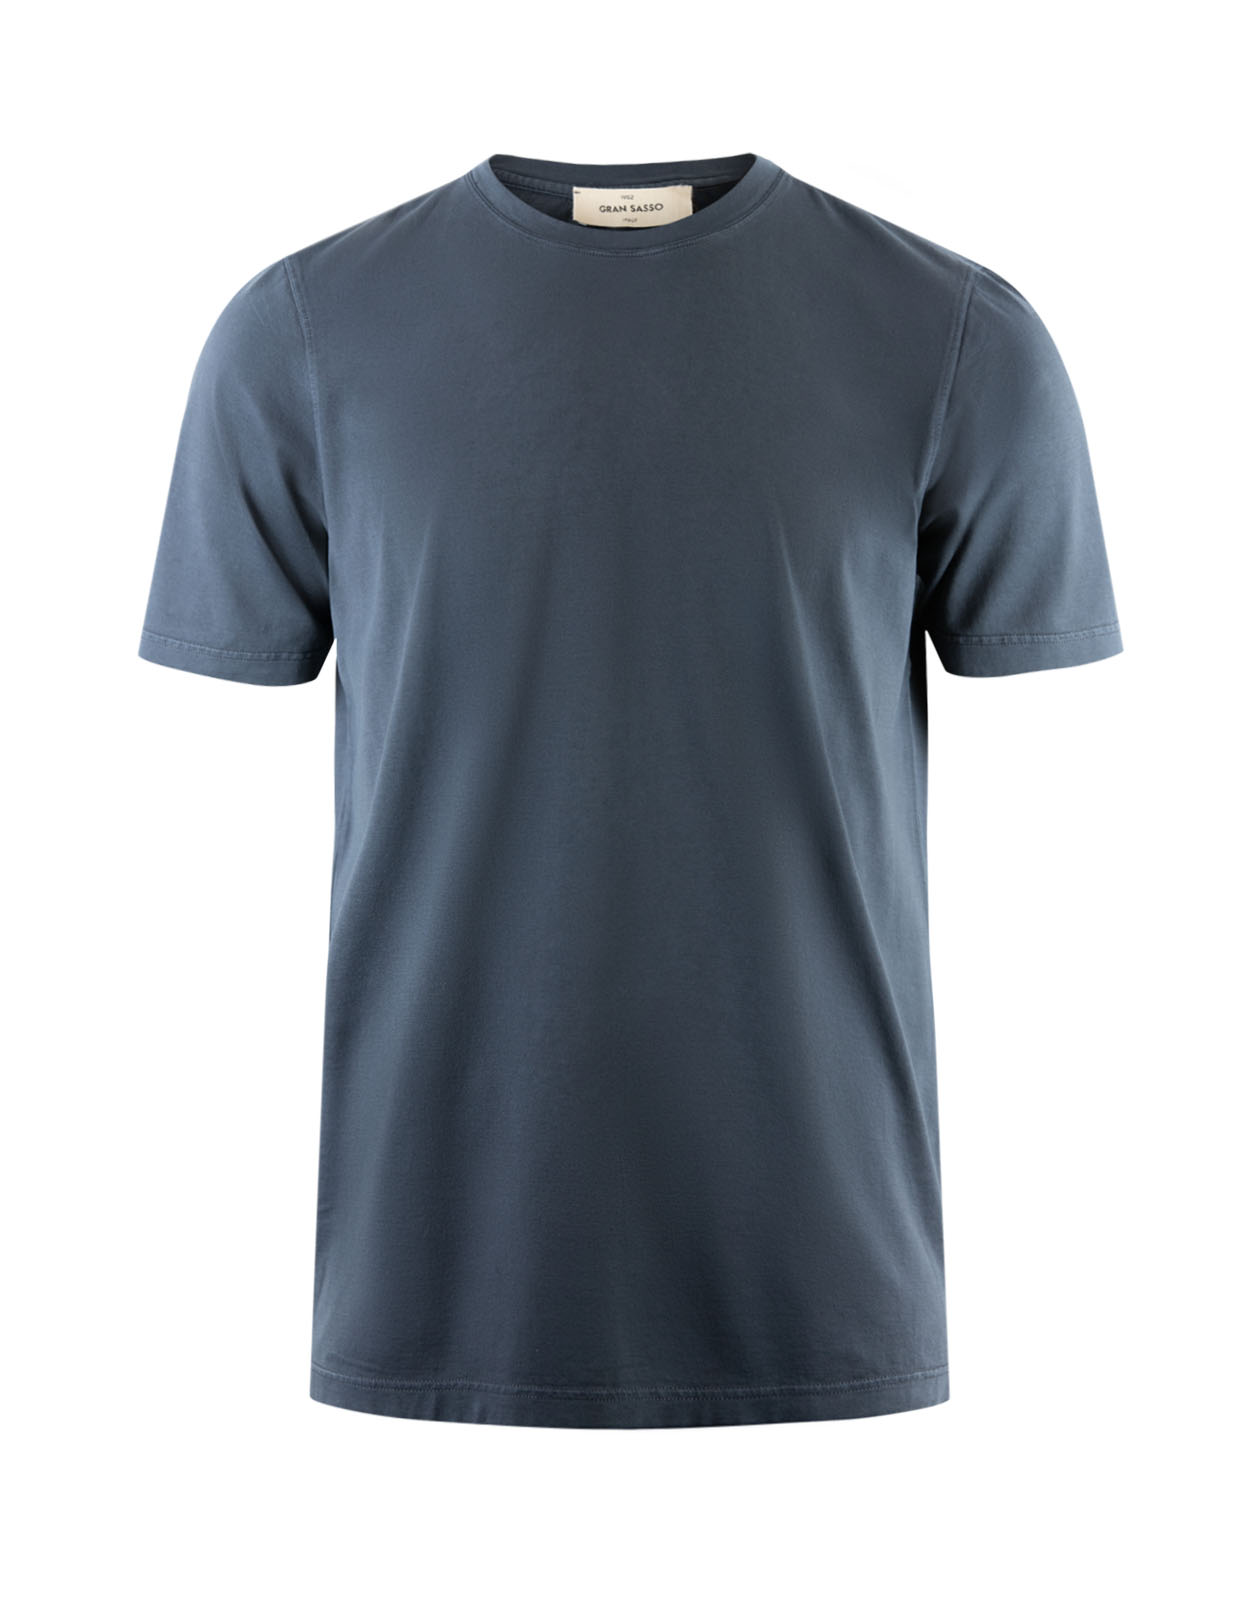 T-Shirt Bomull Navy Stl 48